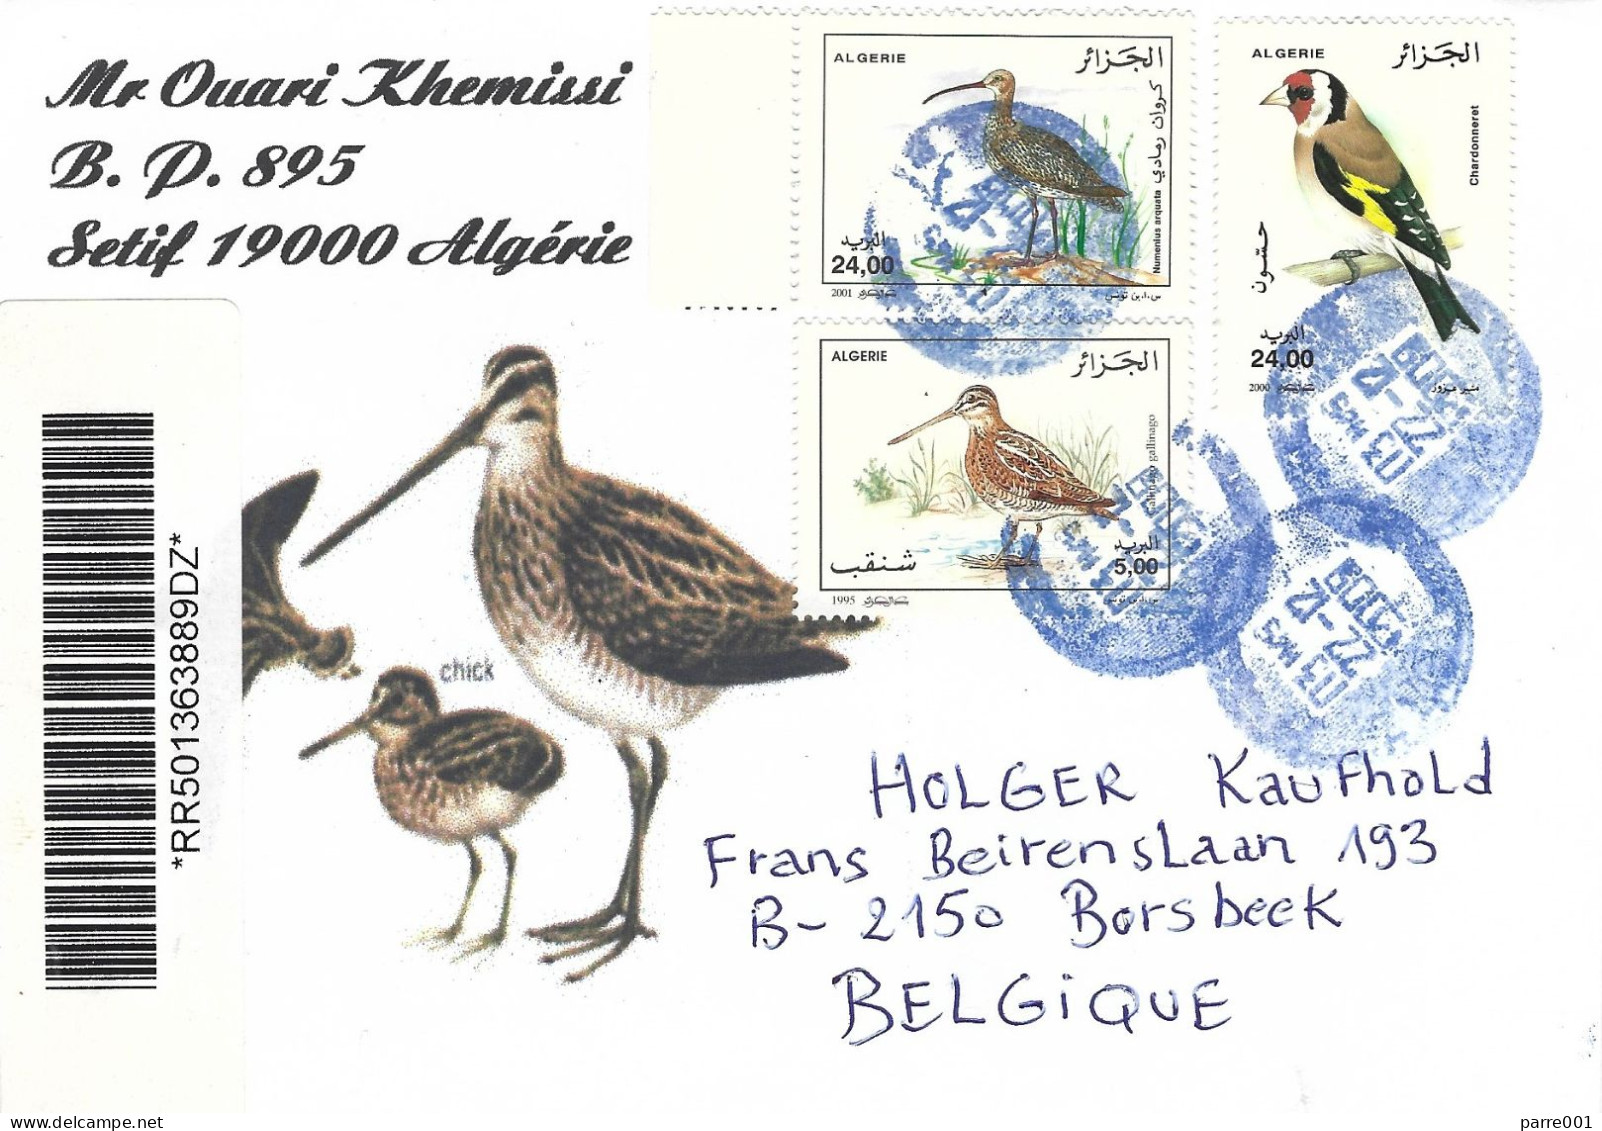 Algeria Algerie 2009 Alger Gold Finch Common Curlew Numenius Arquata Registered Cover - Pájaros Cantores (Passeri)